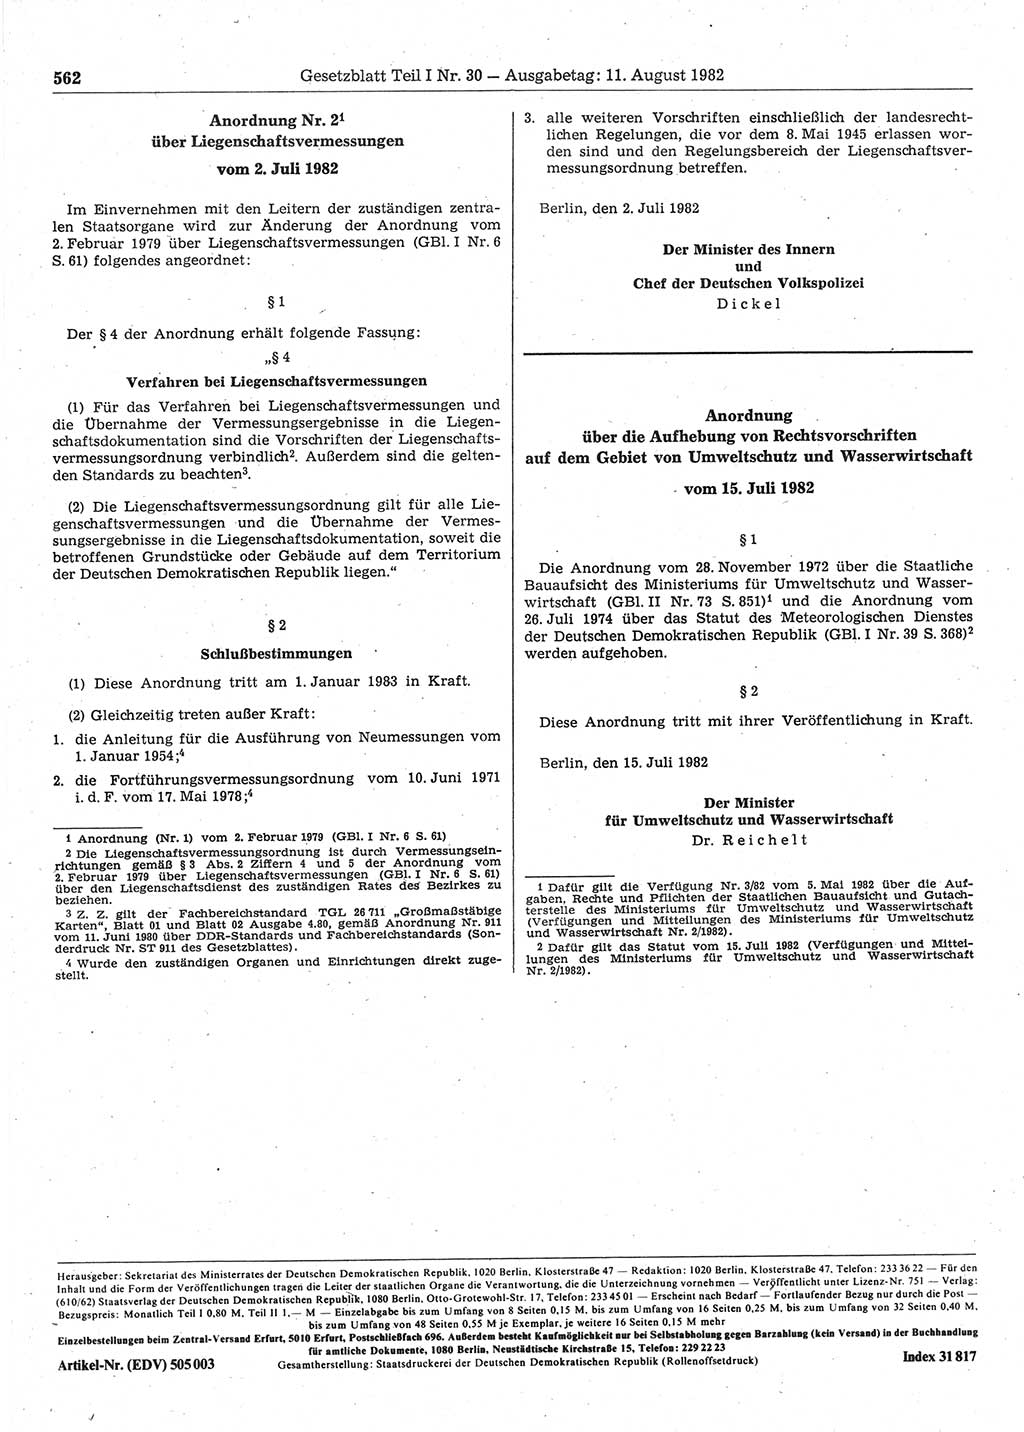 Gesetzblatt (GBl.) der Deutschen Demokratischen Republik (DDR) Teil Ⅰ 1982, Seite 562 (GBl. DDR Ⅰ 1982, S. 562)